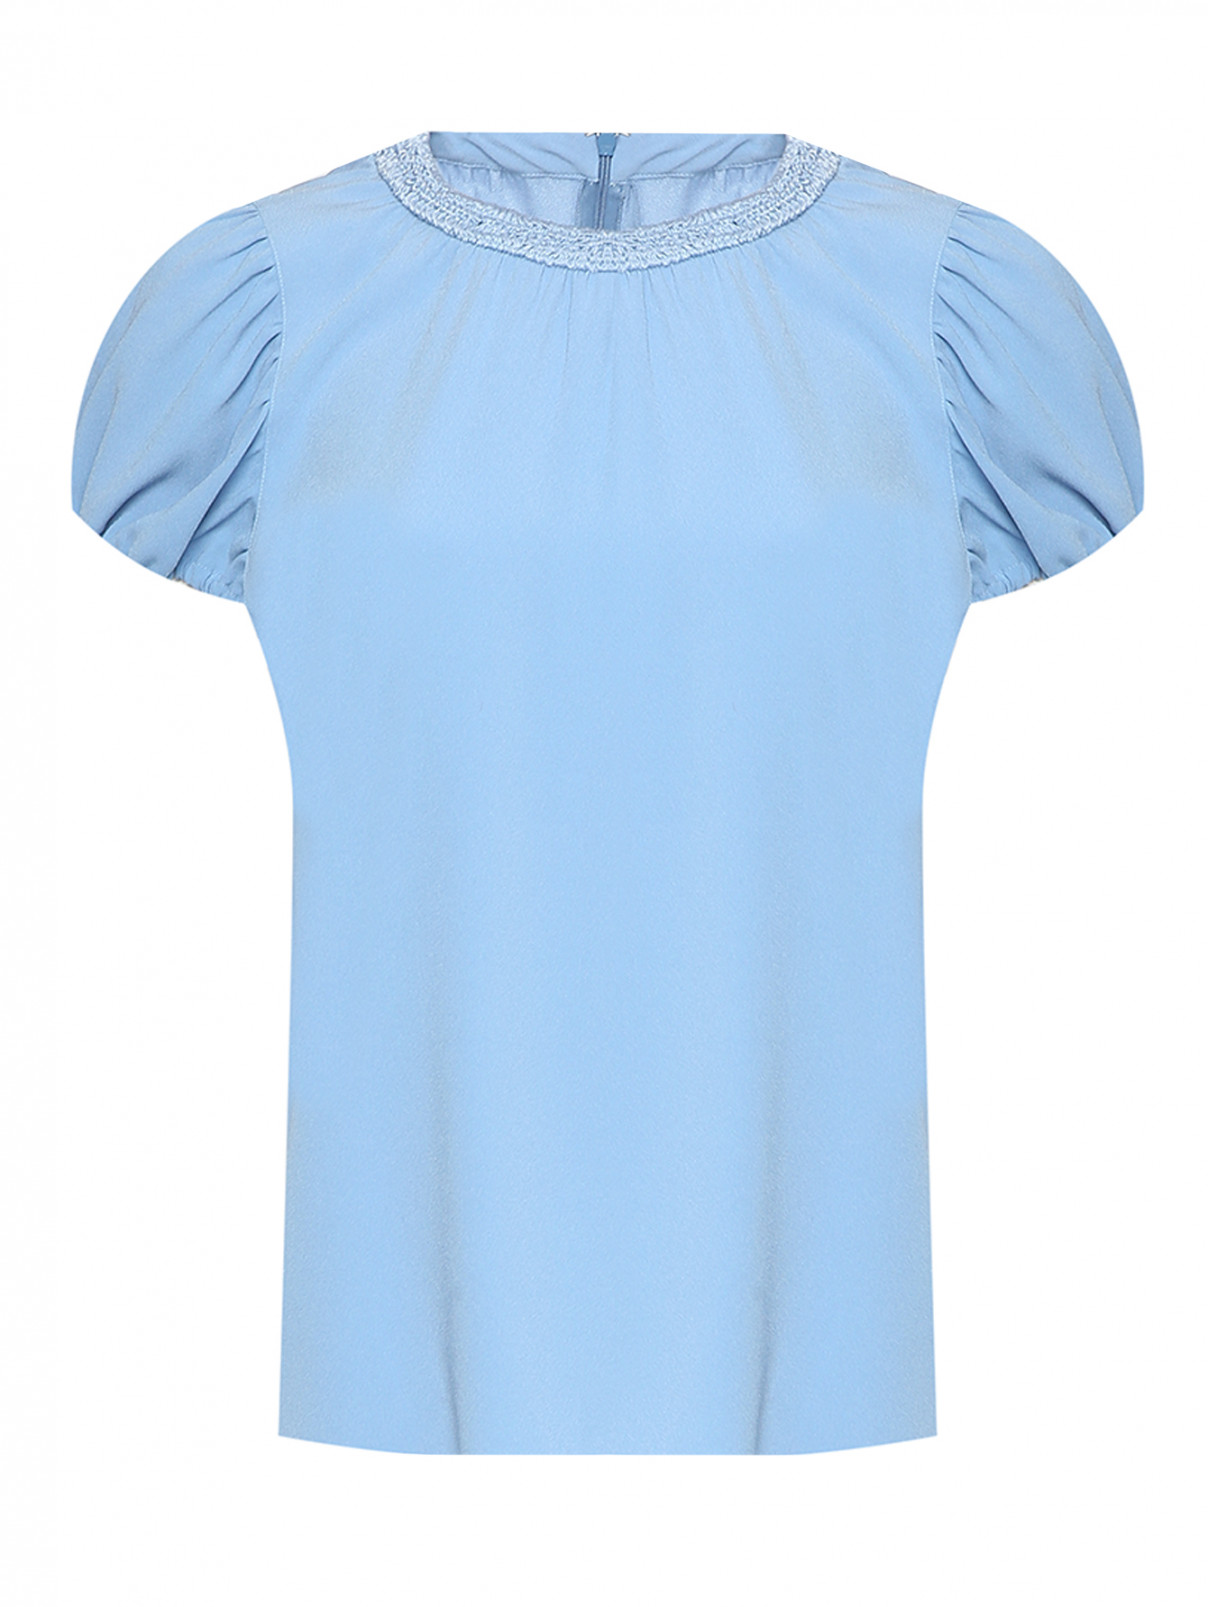 Однотонная блуза с коротким рукавом Kenzo  –  Общий вид  – Цвет:  Синий